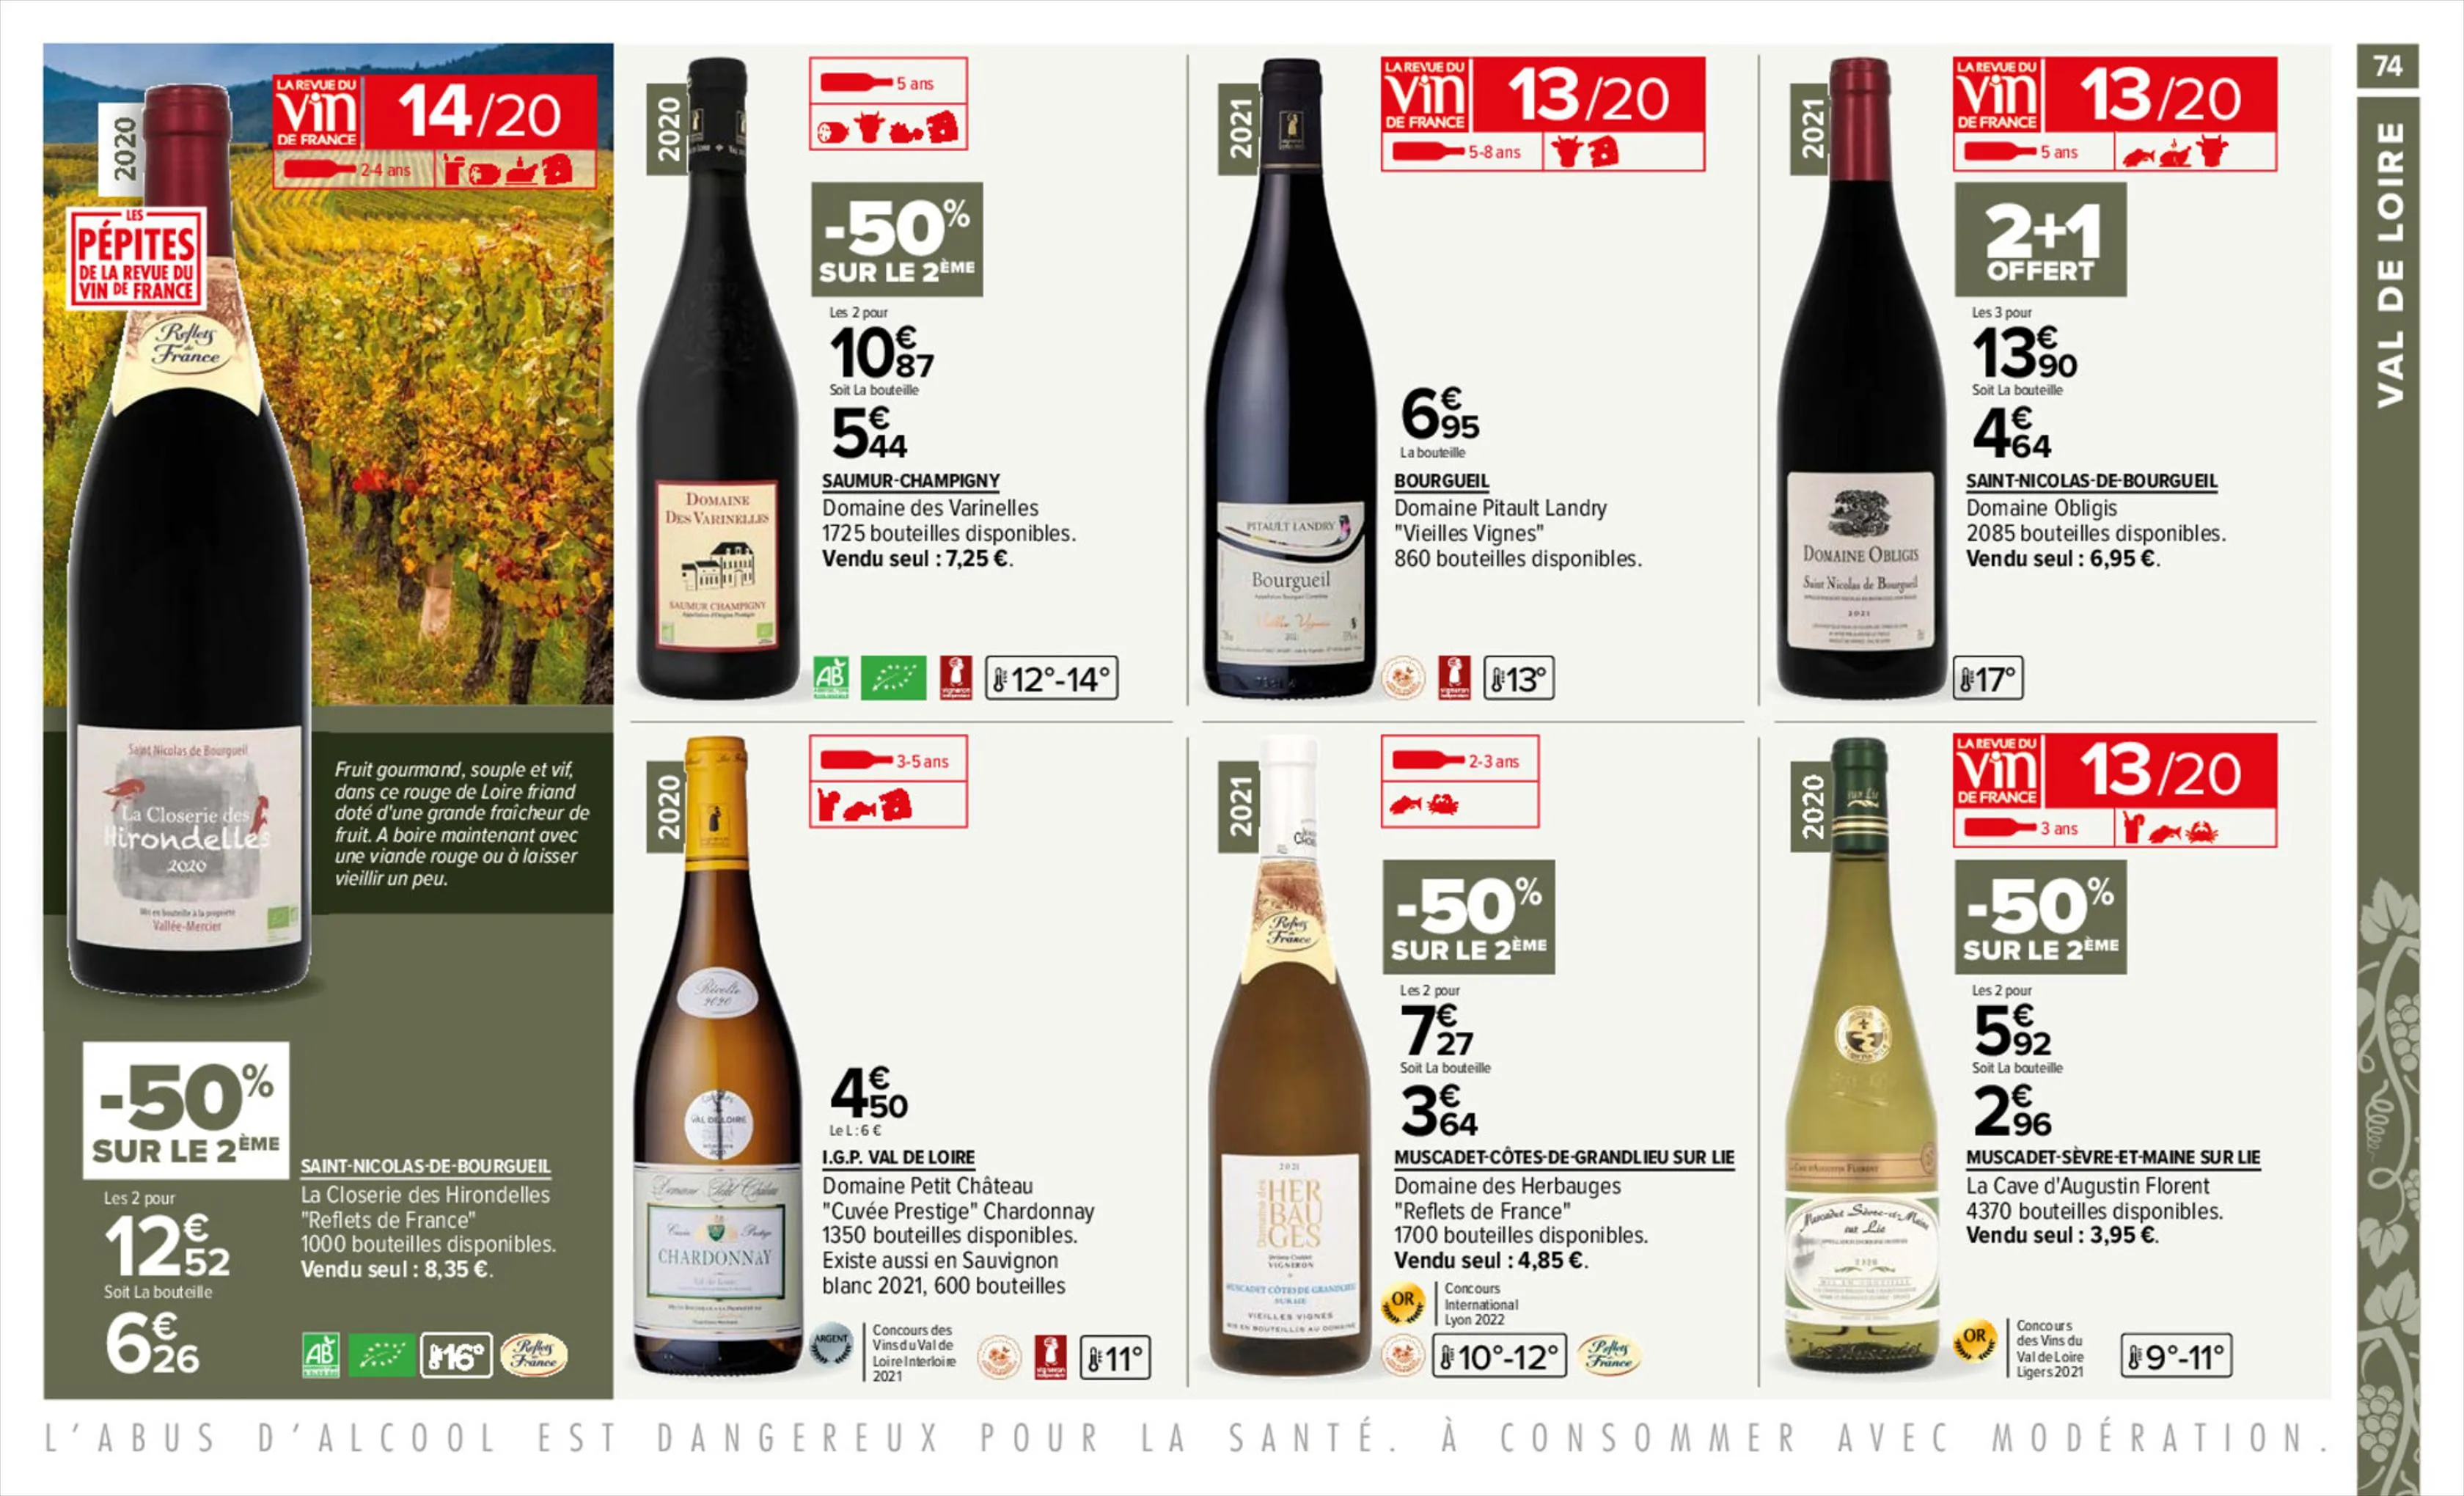 Catalogue Foire aux vins, page 00074